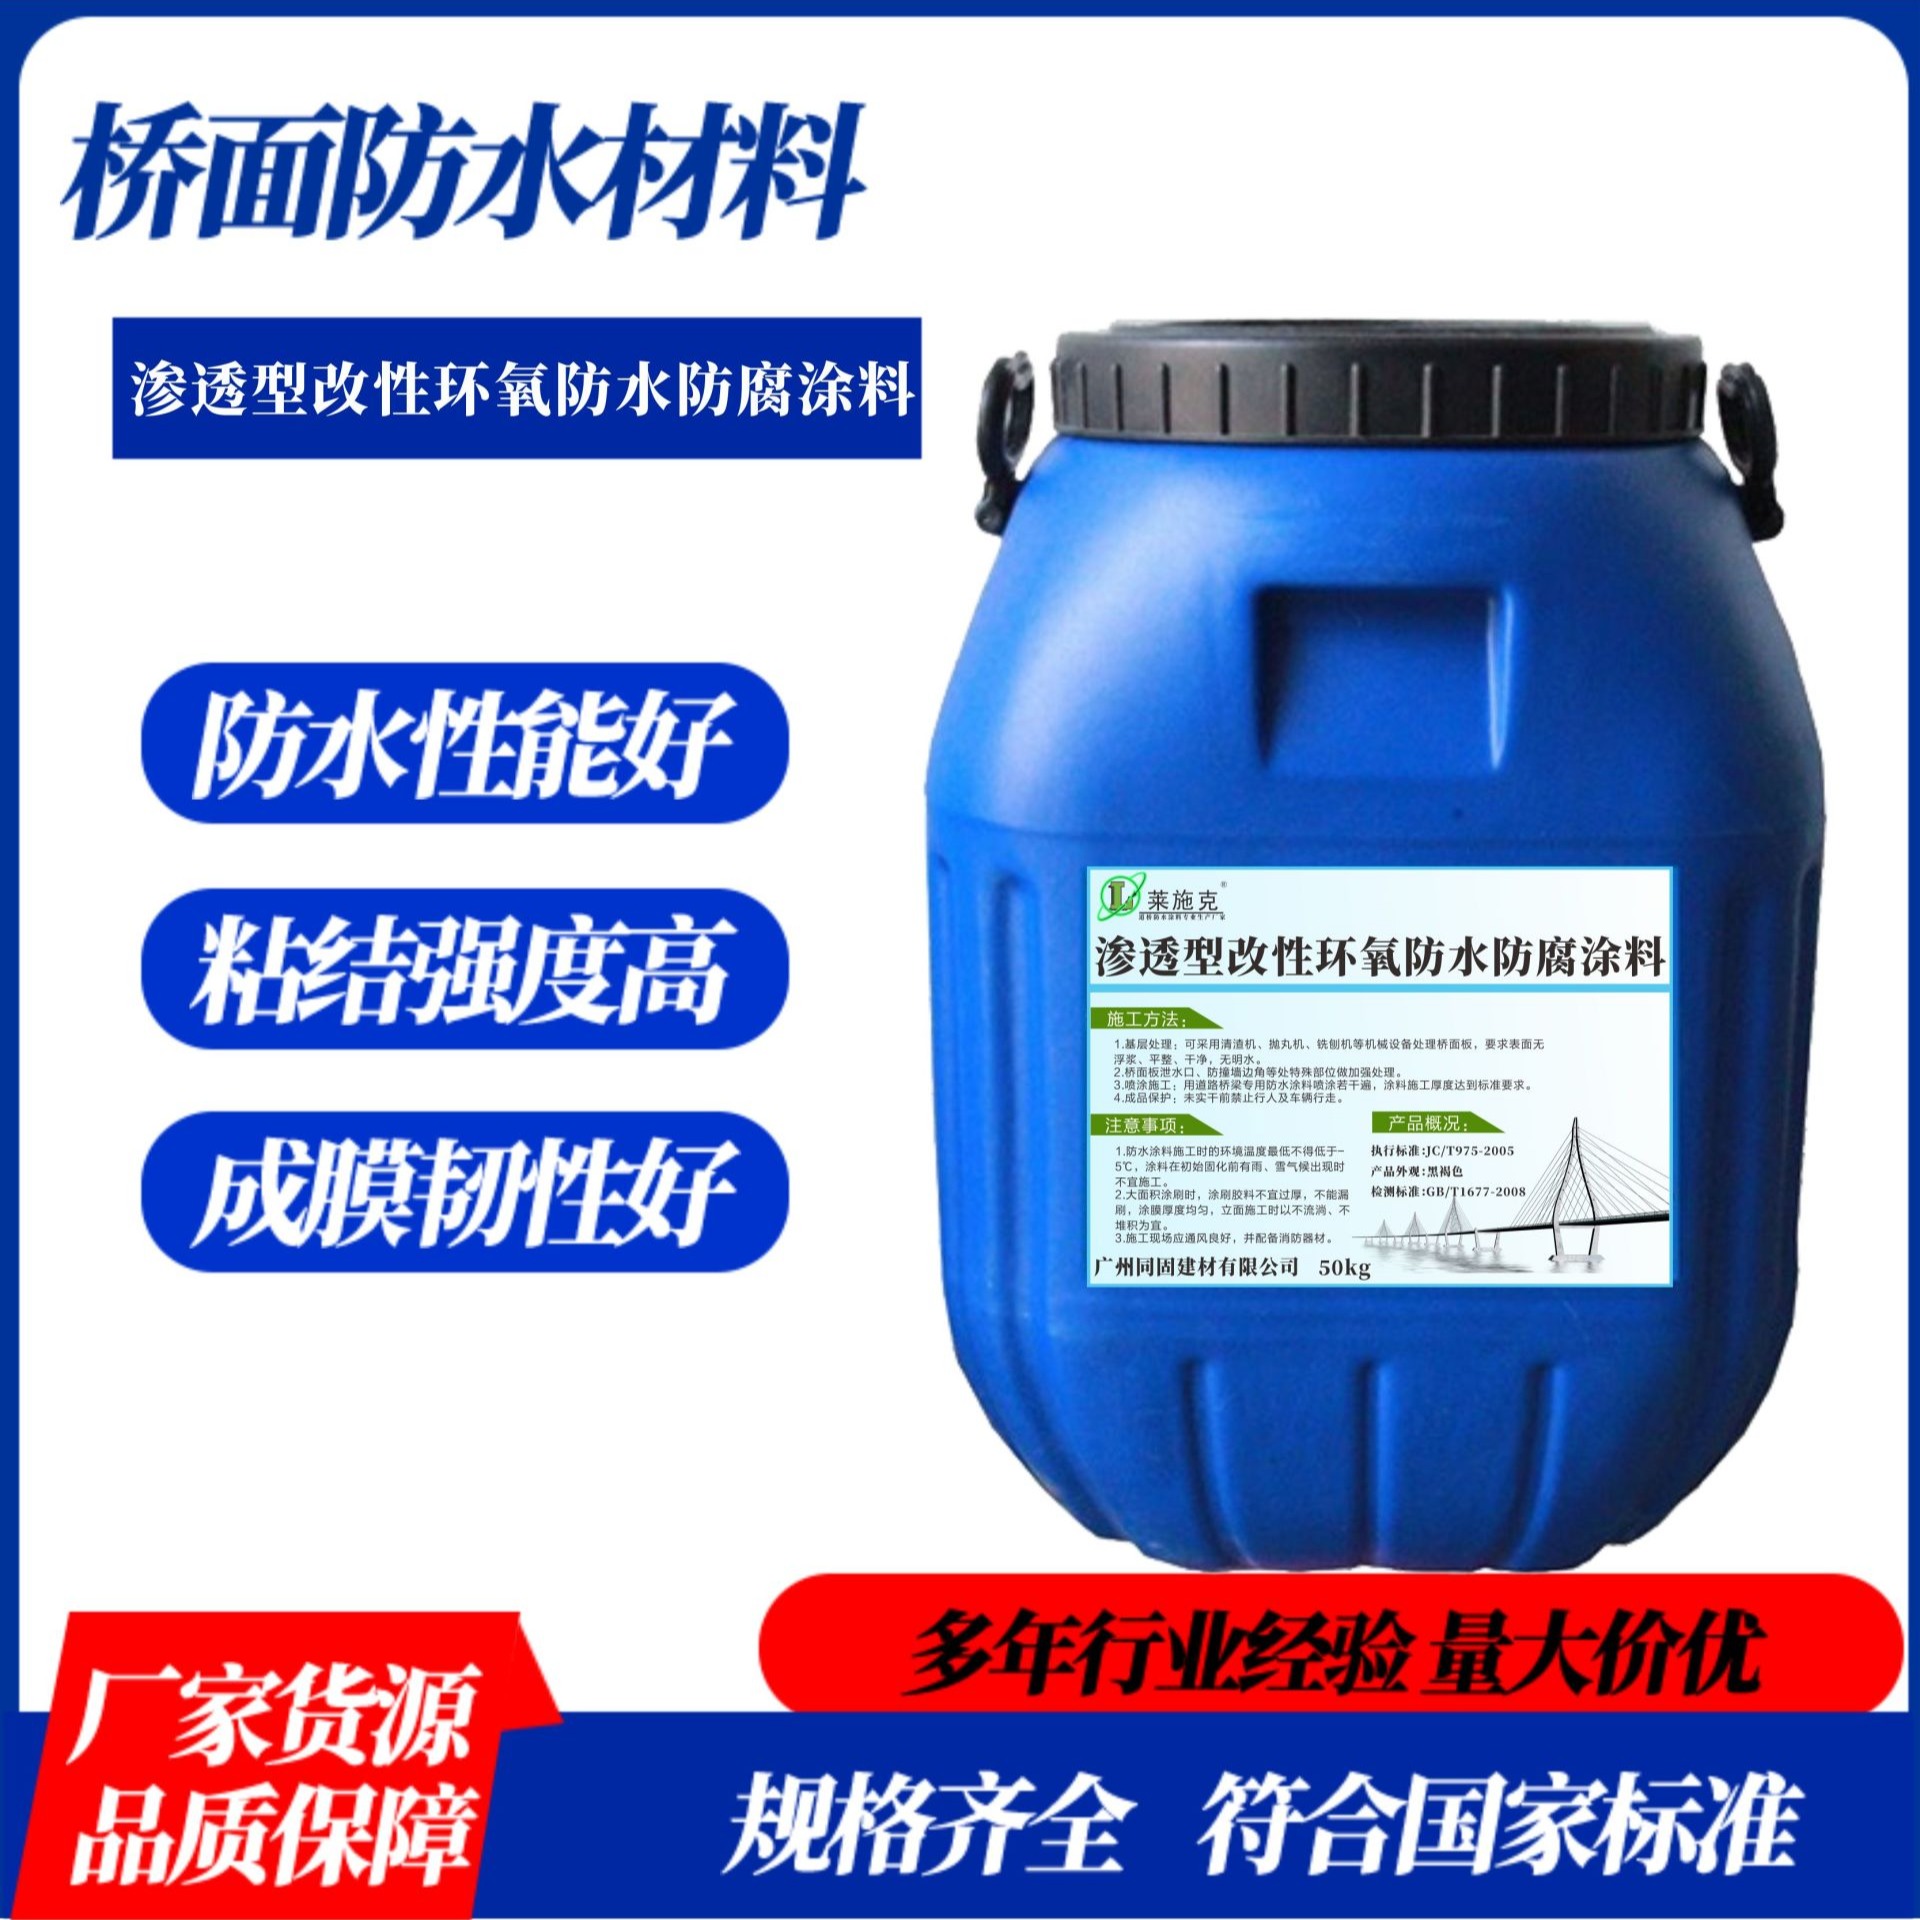 莱施克高渗透改性环氧树脂防水防腐涂料 水性环氧树脂防水涂料